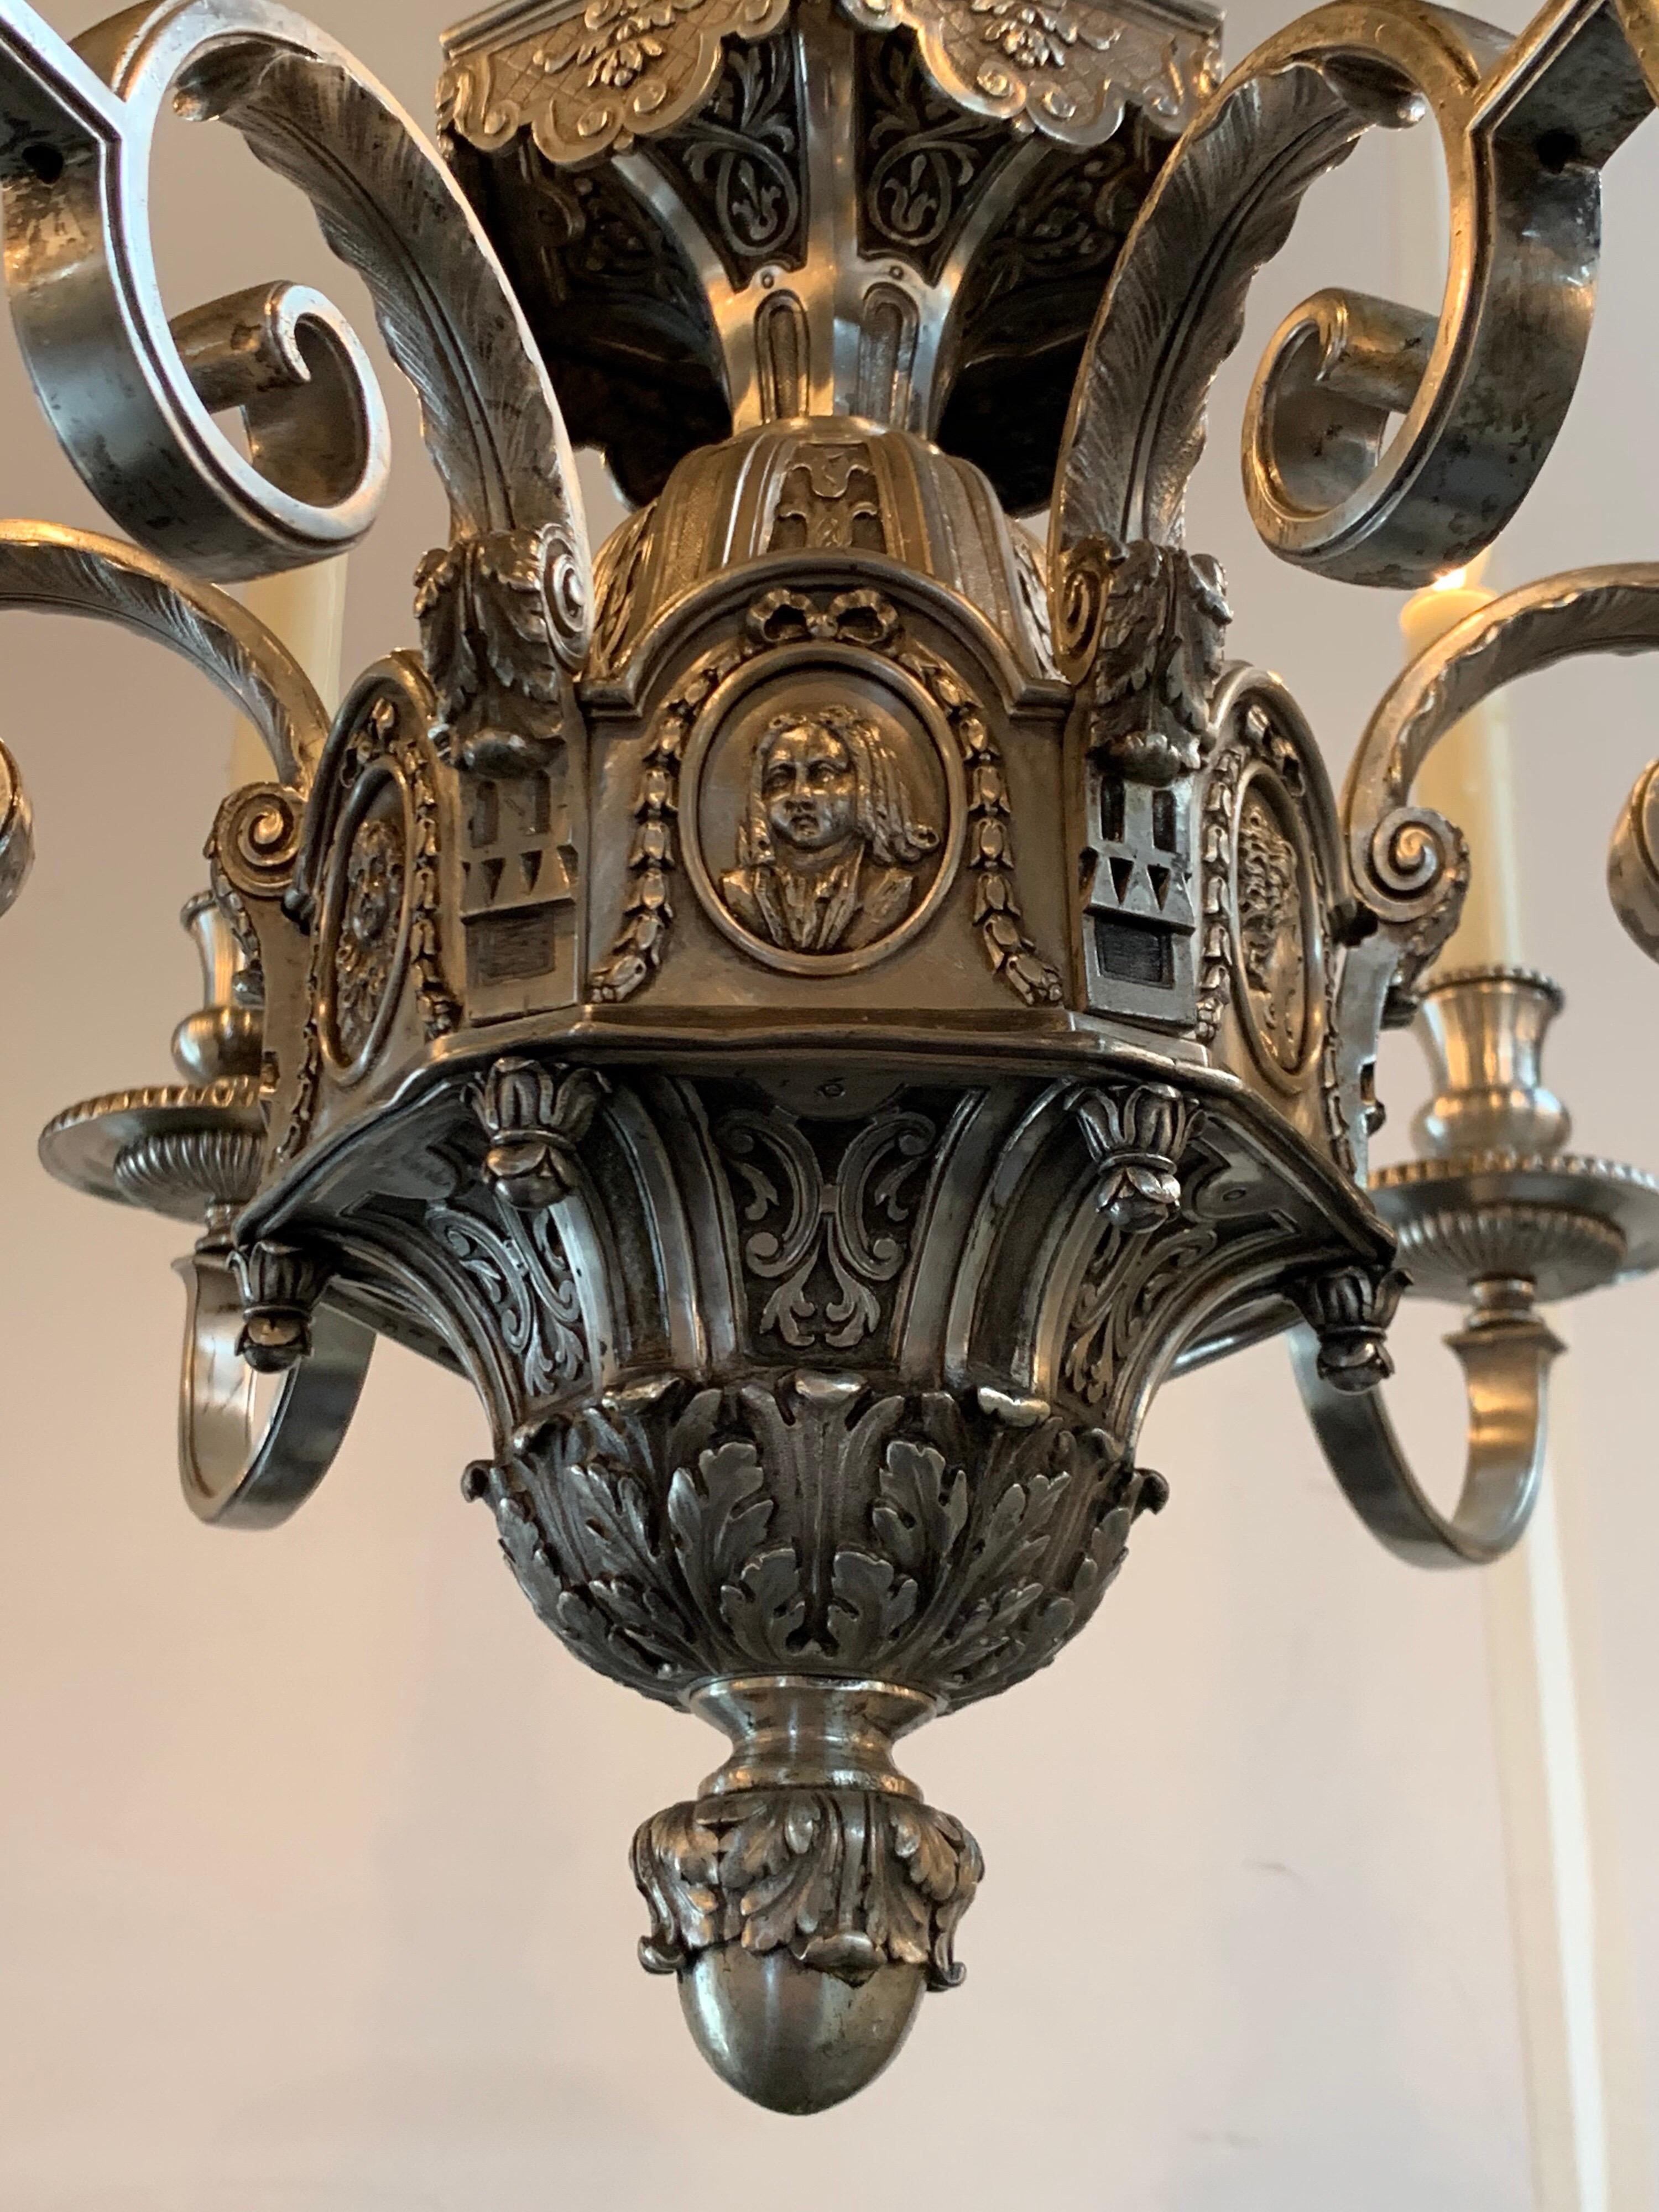 Beau lustre de style néoclassique anglais du 19ème siècle avec 6 lumières. Magnifique finition argentée sur bronze avec des détails décoratifs étonnants.